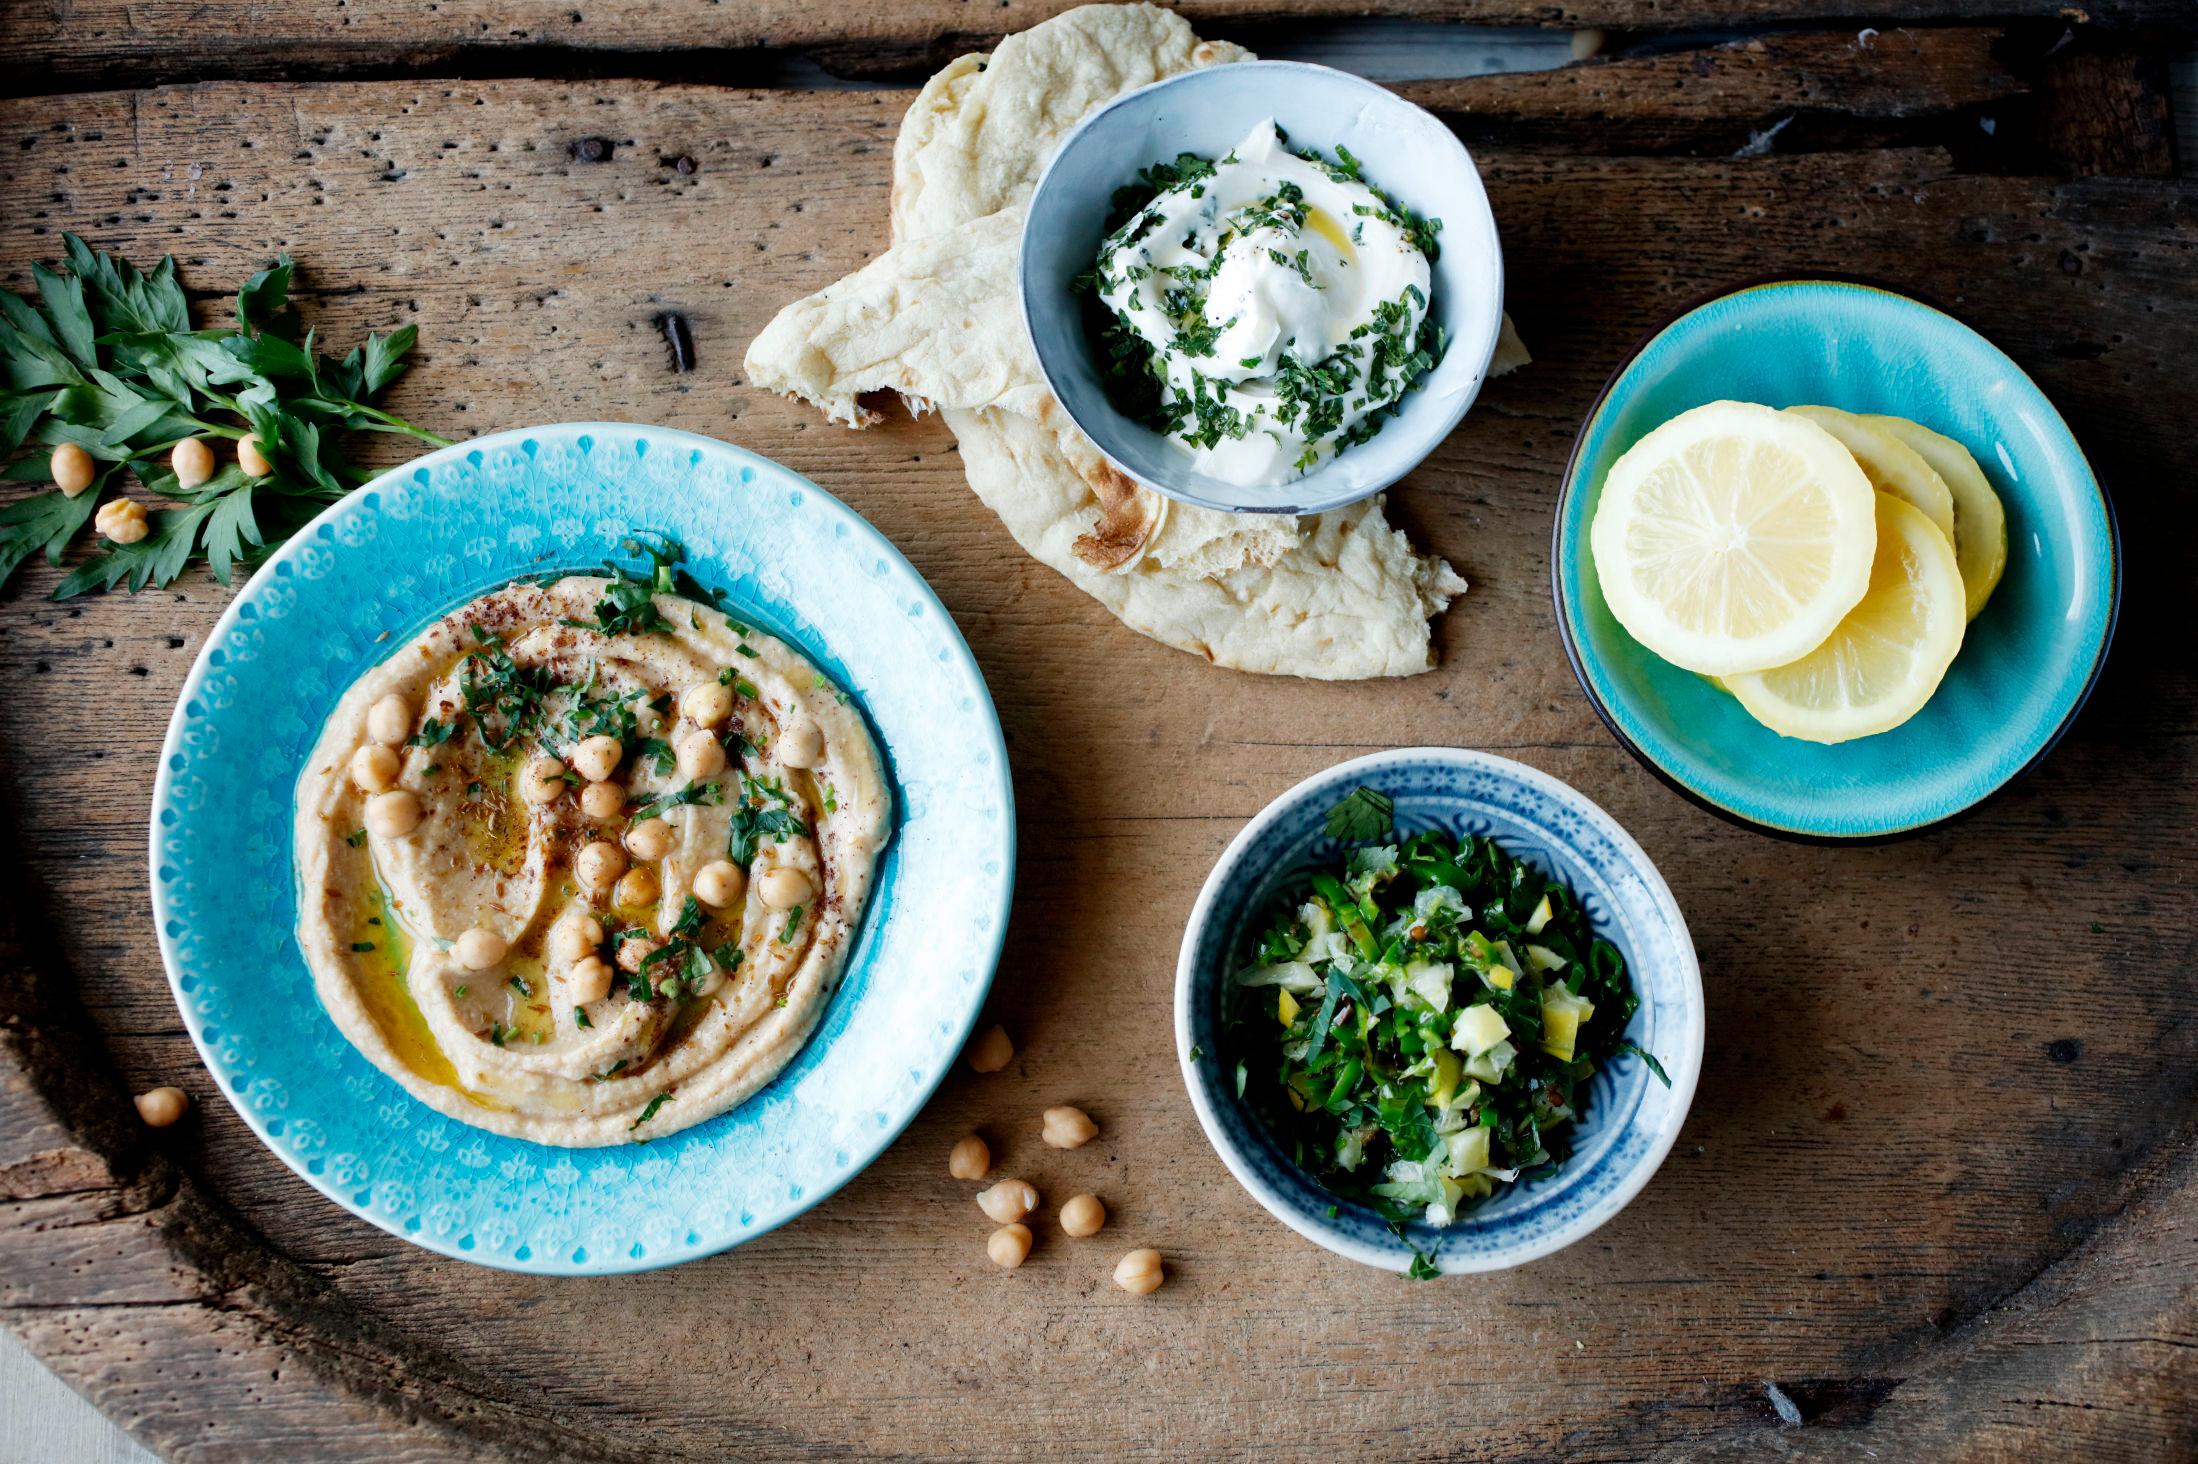 EKSOTISK: Hummus, mynteyoghurt eller «grønn» dipp med syltet sitron er spennende tilbehør til maten. Oppskriftene finner du under. Foto: Sara Johannessen / VG